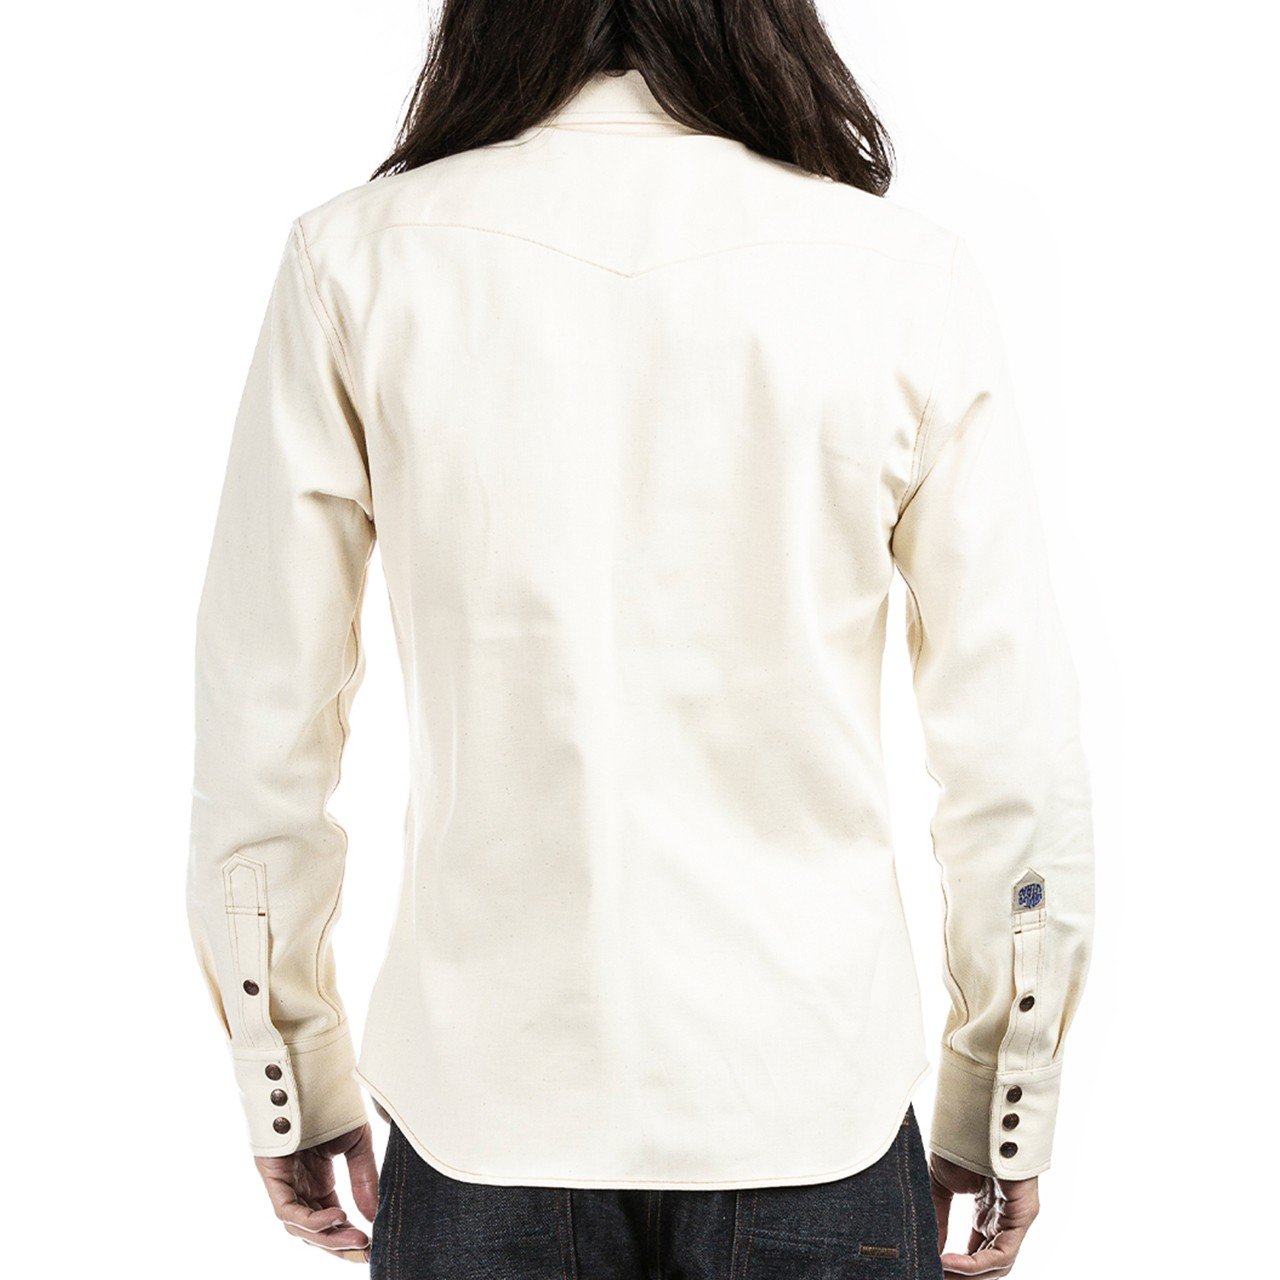 Indigofera - Ryman White Denim Shirt Japanese Denim